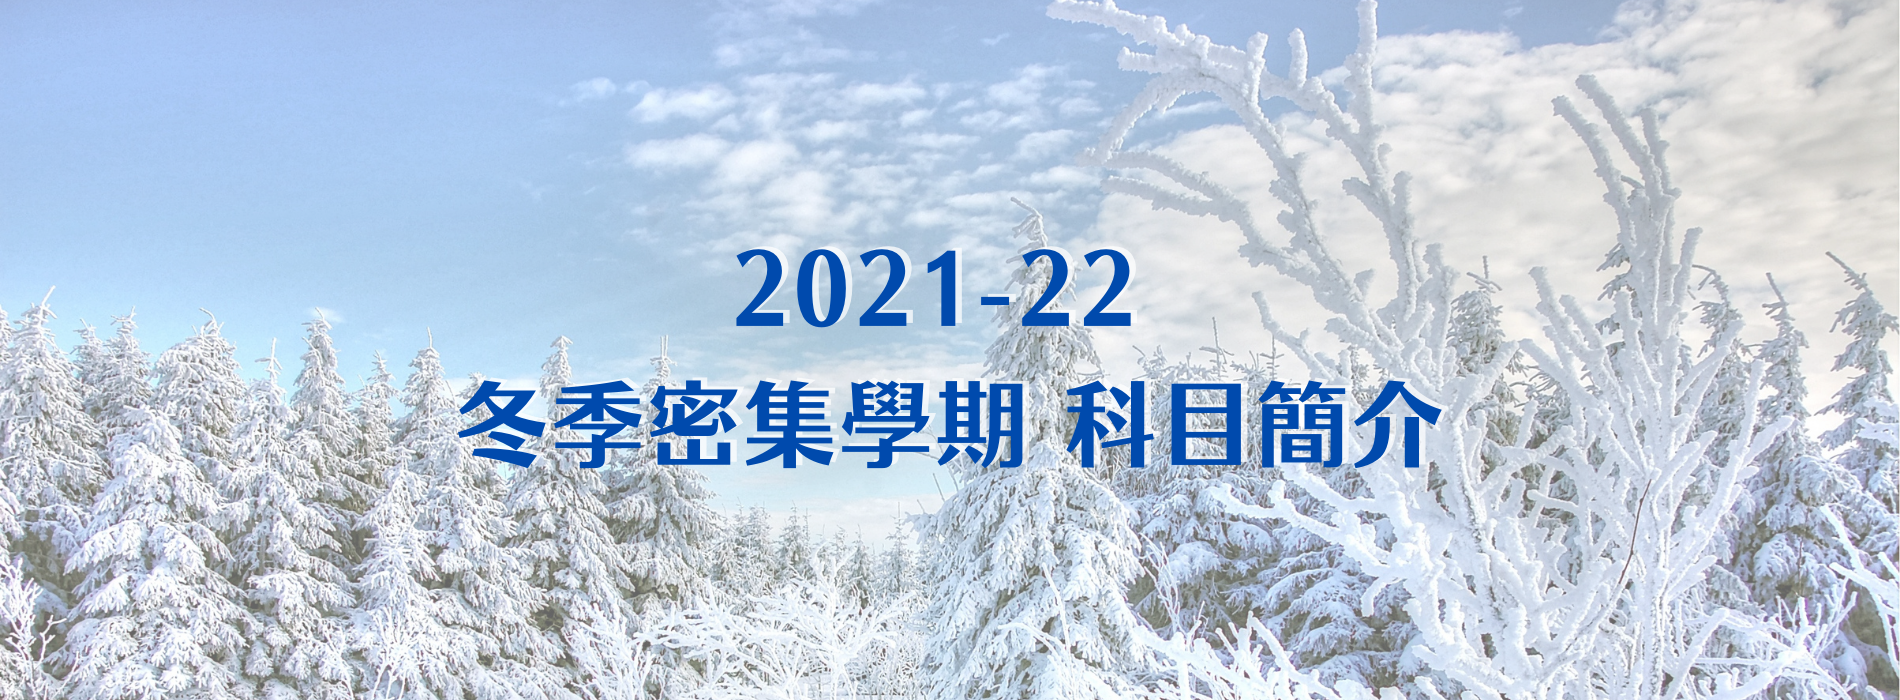  基督教事工學院 2021-22年 冬季密集學期科目簡介